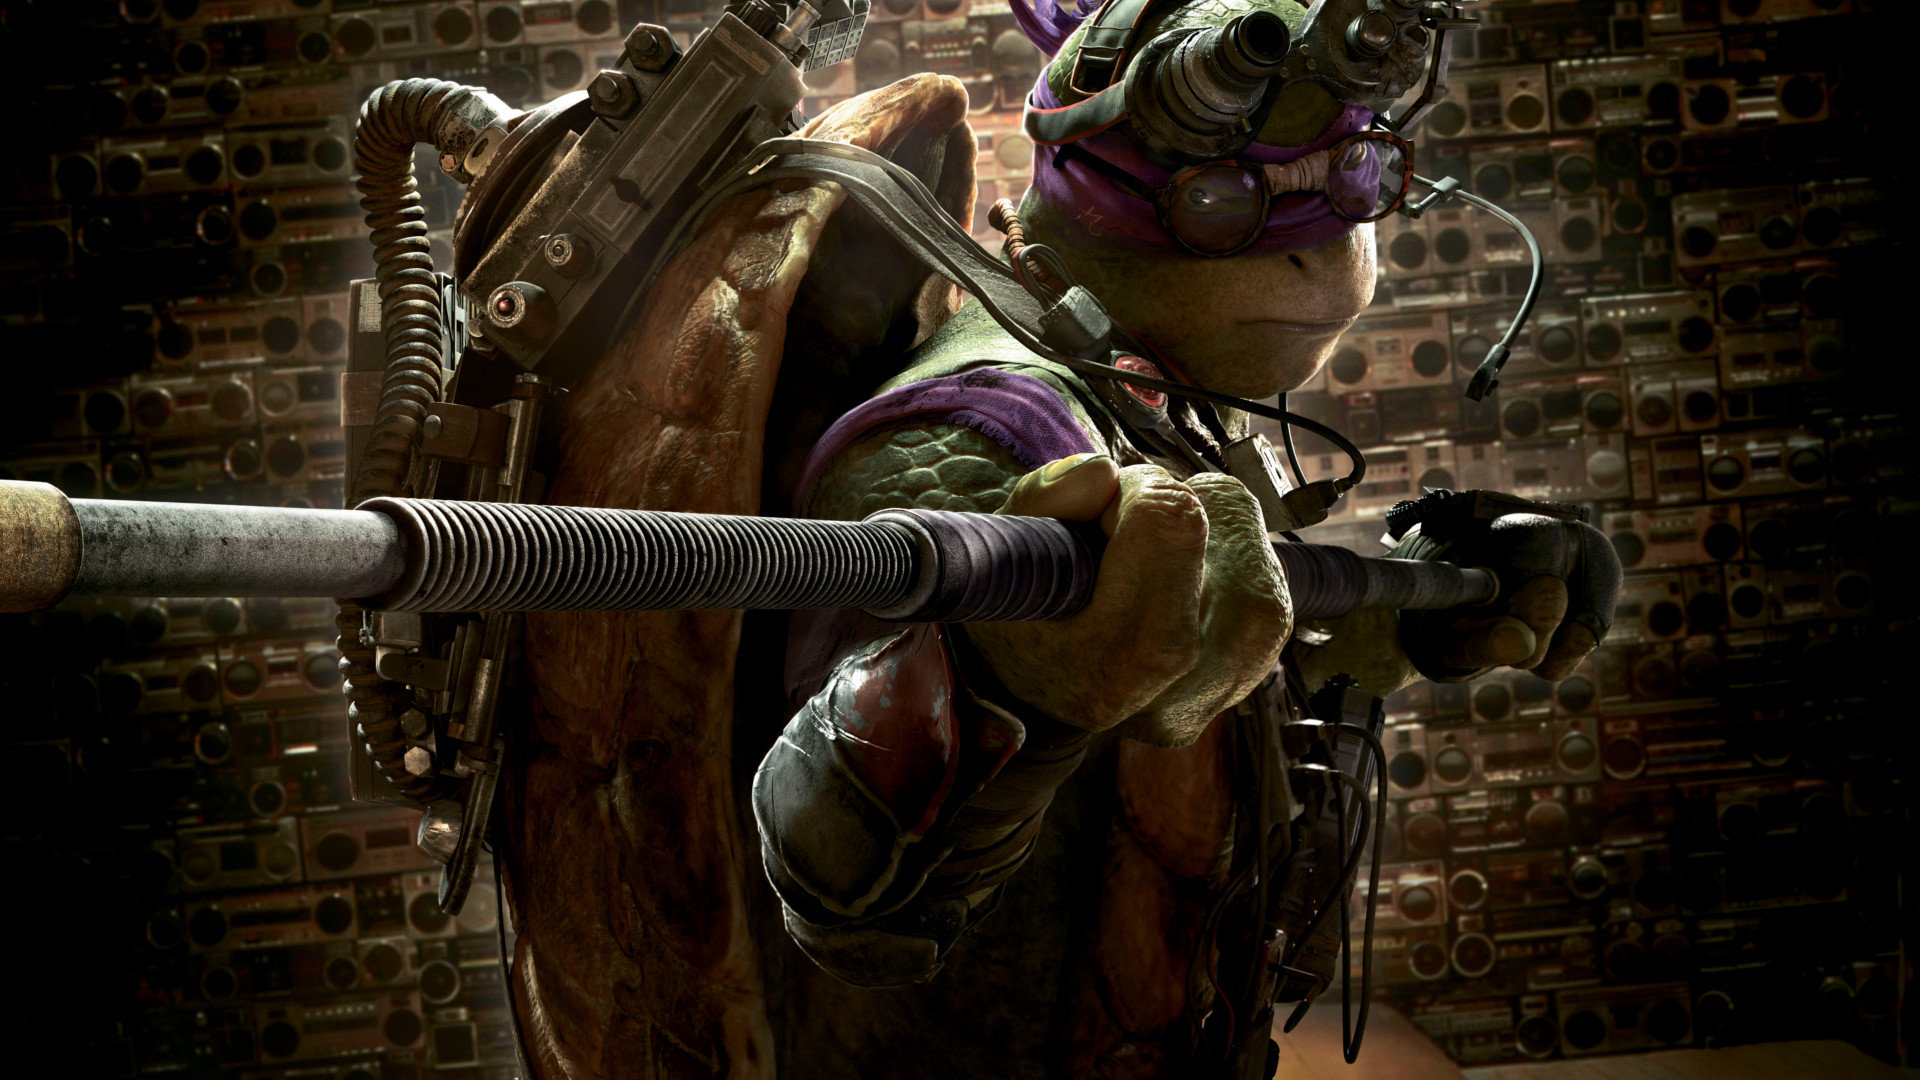 Best Teenage Mutant Ninja Turtles (2014) TMNT movie background ID:234209 for High Resolution 1080p computer